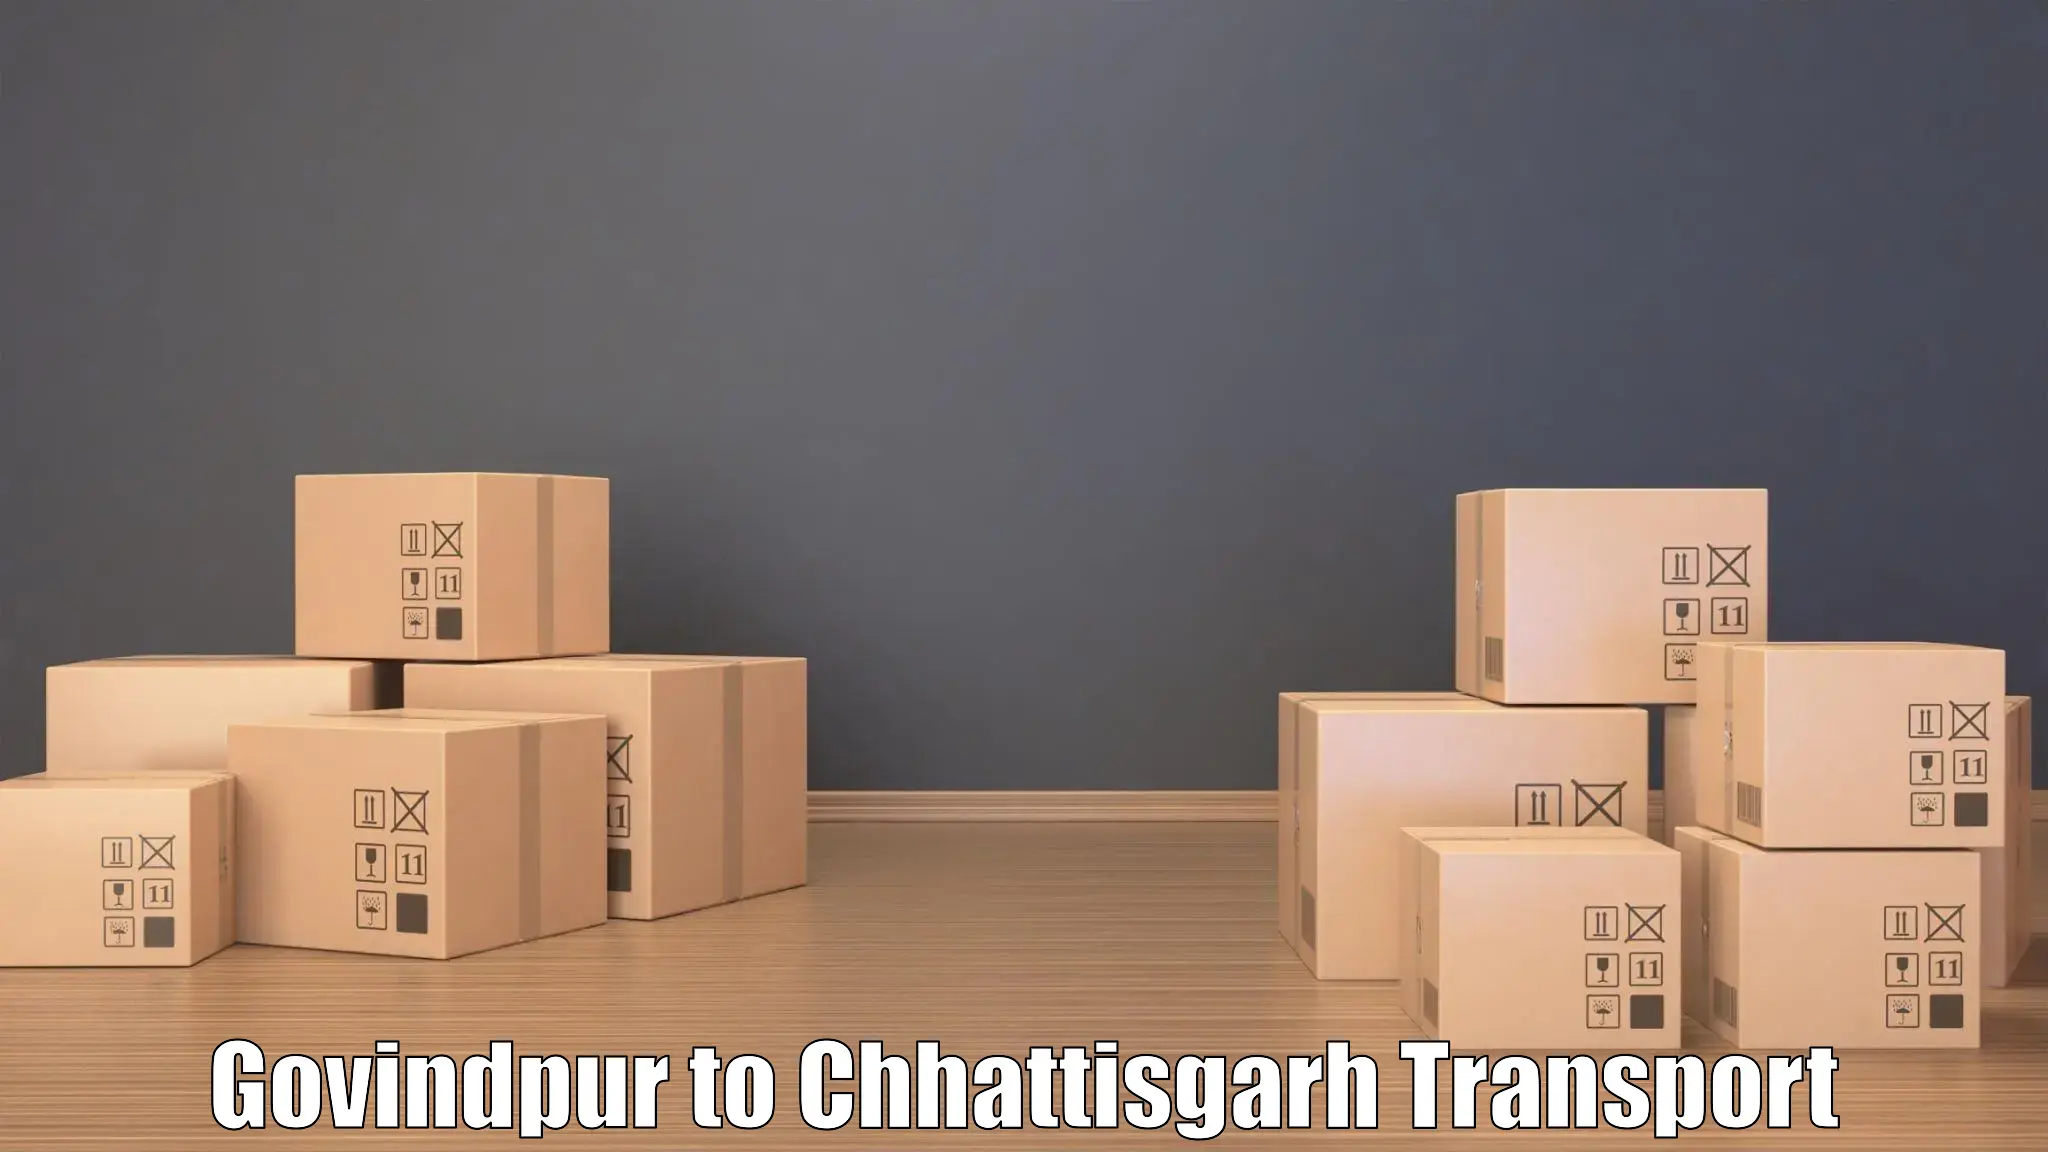 Commercial transport service Govindpur to Bastar